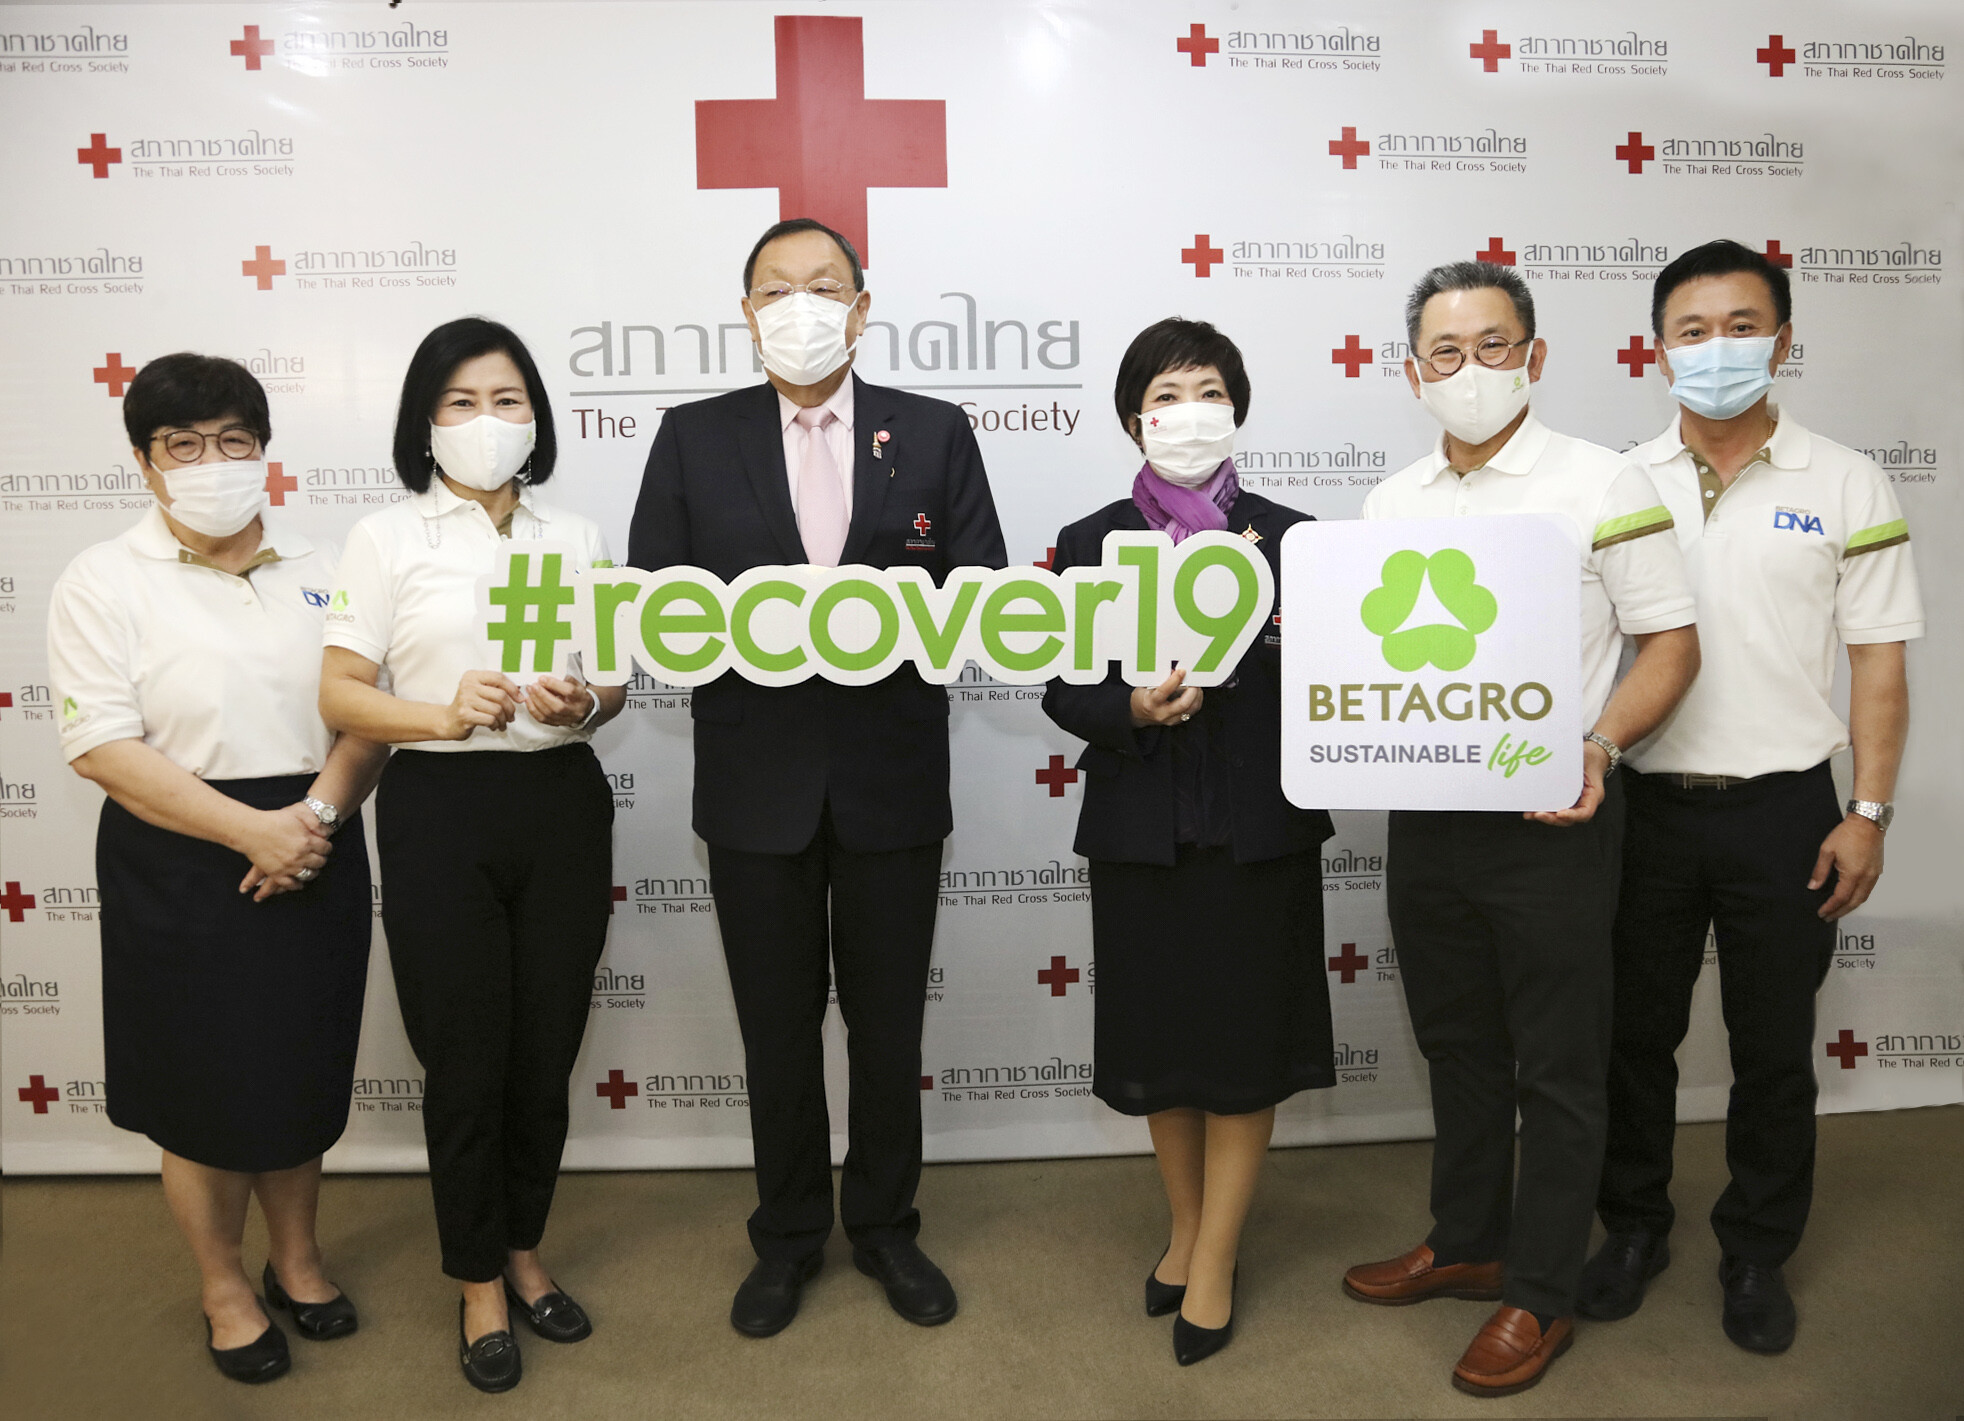 เครือเบทาโกร สานต่อโครงการ BETAGRO #recover19 หนุนวิจัยวัคซีนโควิด-19 ร่วมสร้างชีวิตที่ดีอย่างยั่งยืนแก่สังคมไทย